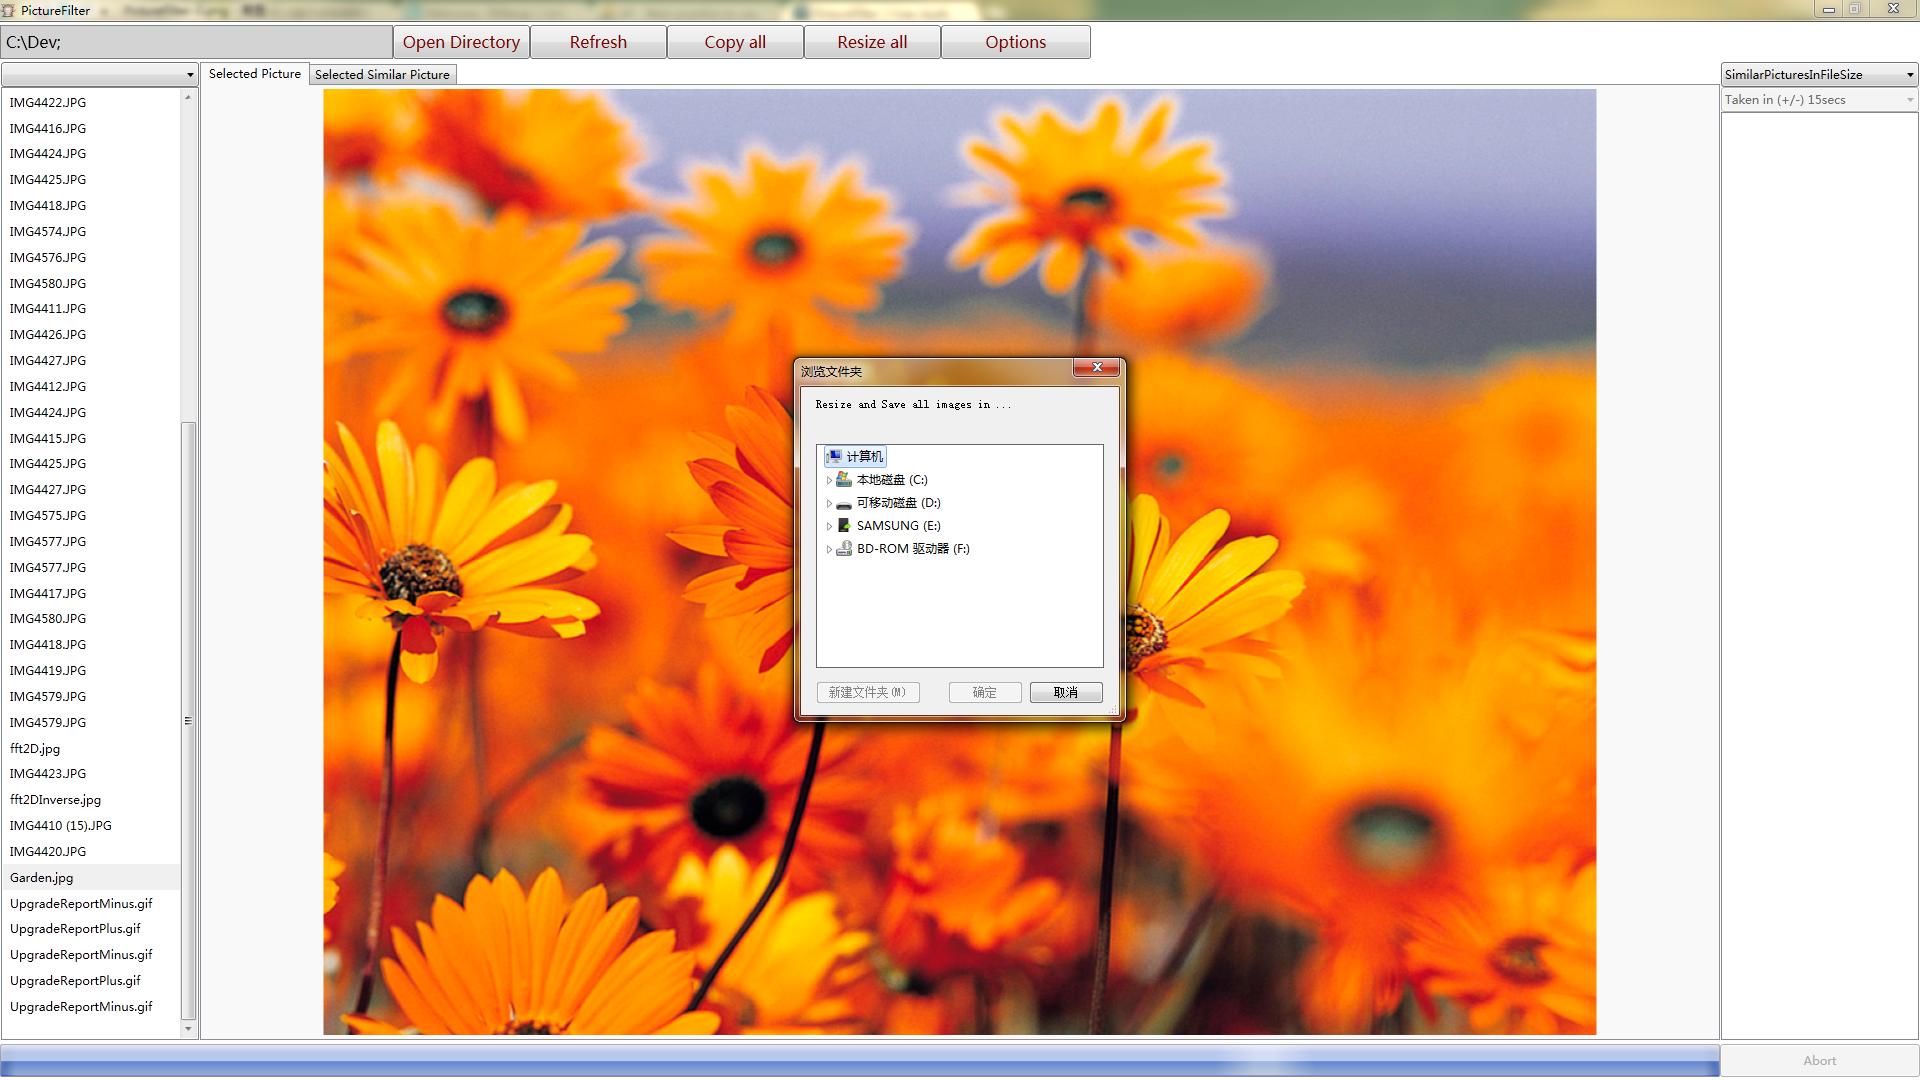 PictureFilter 1.1.1 software screenshot